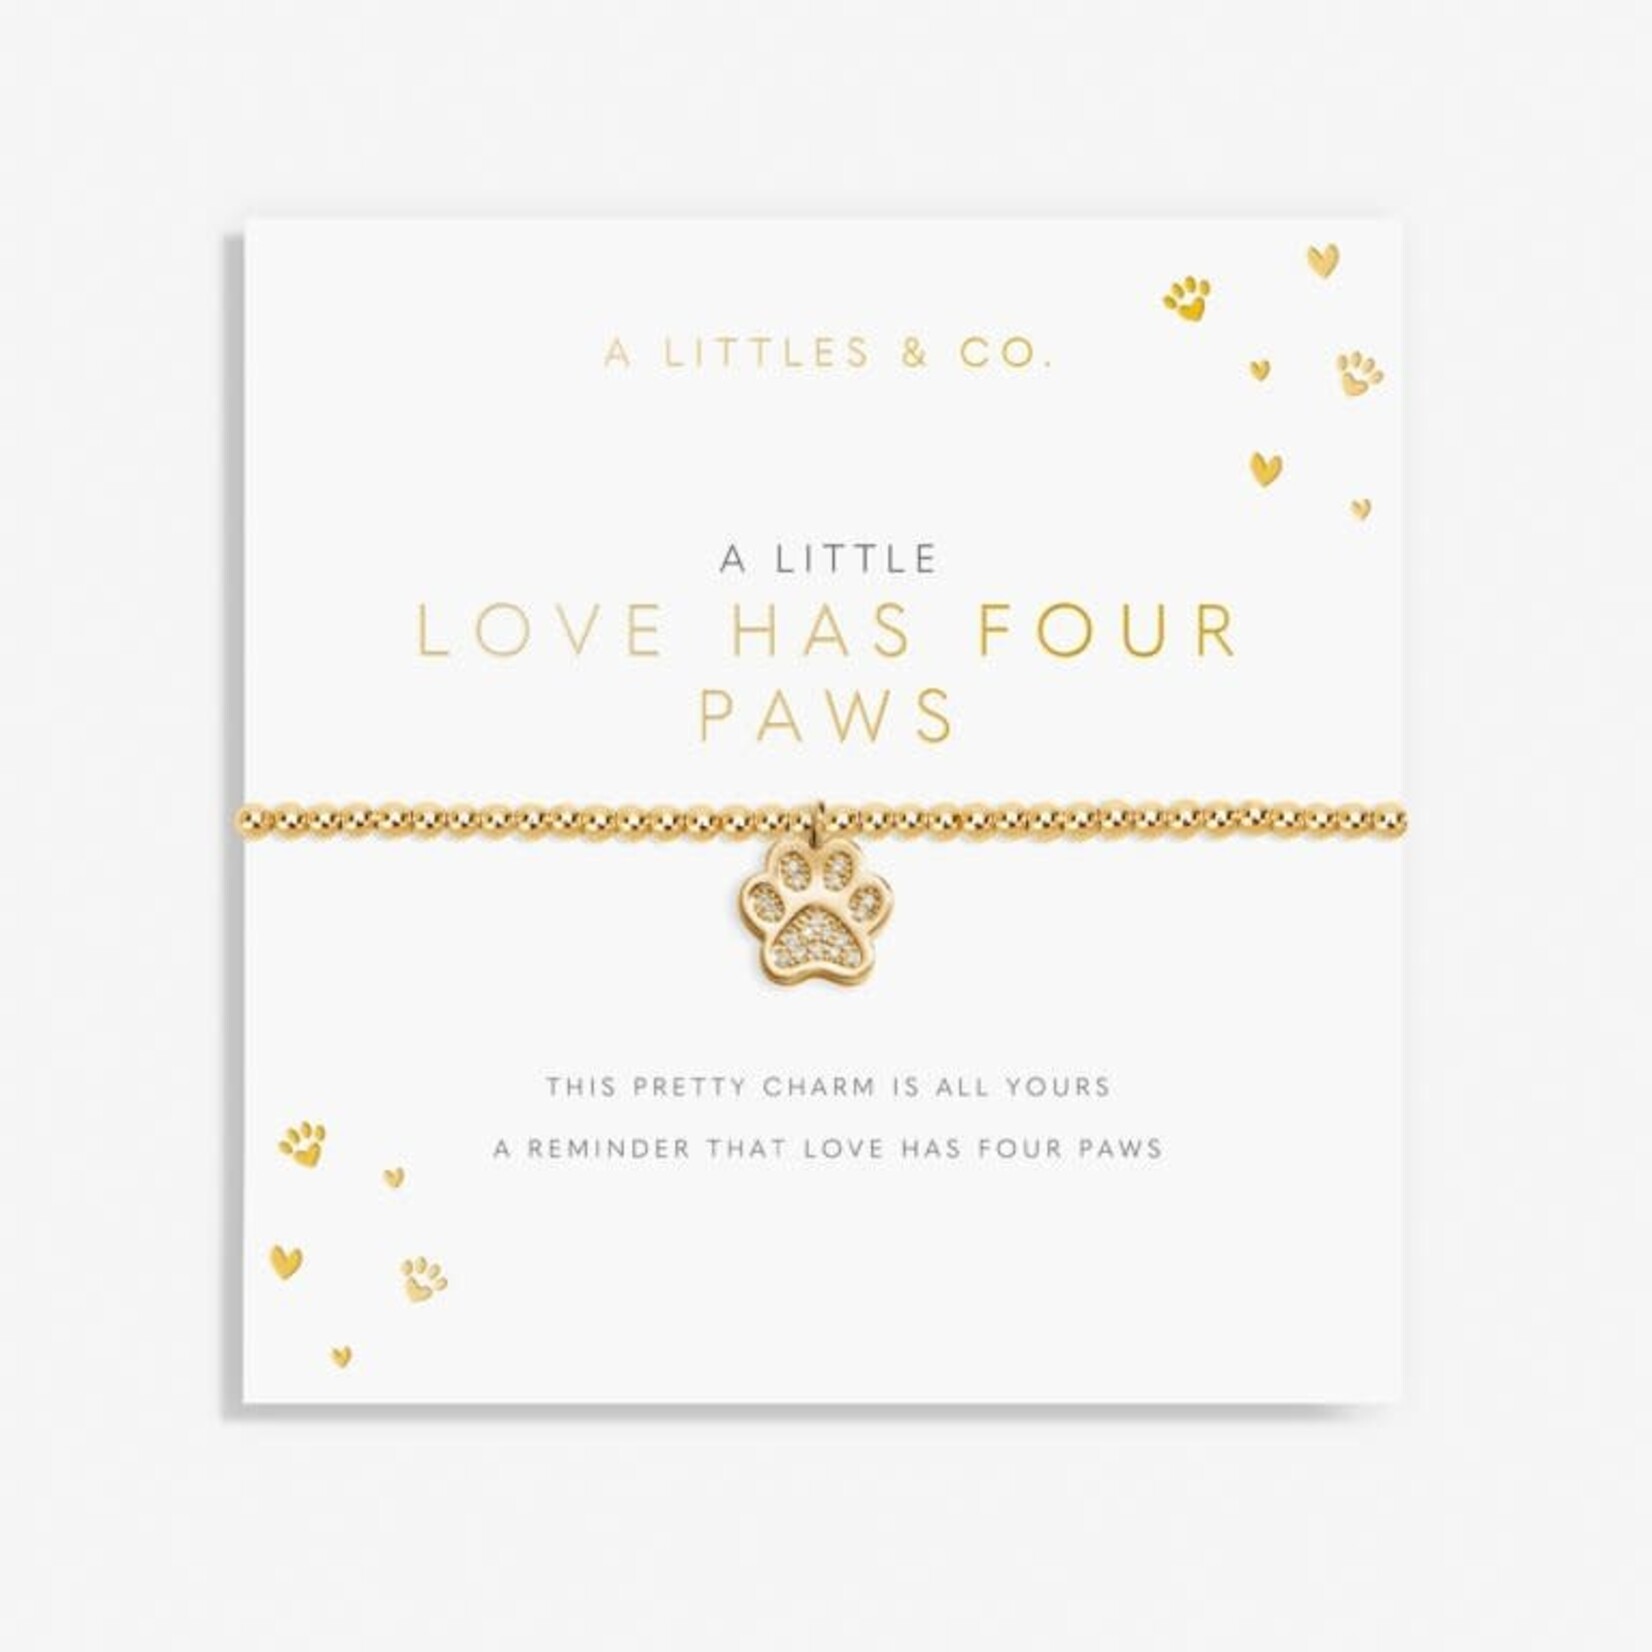 A LITTLES & CO A LITTLE LOVE HAS FOUR PAWS GOLD BRACELET